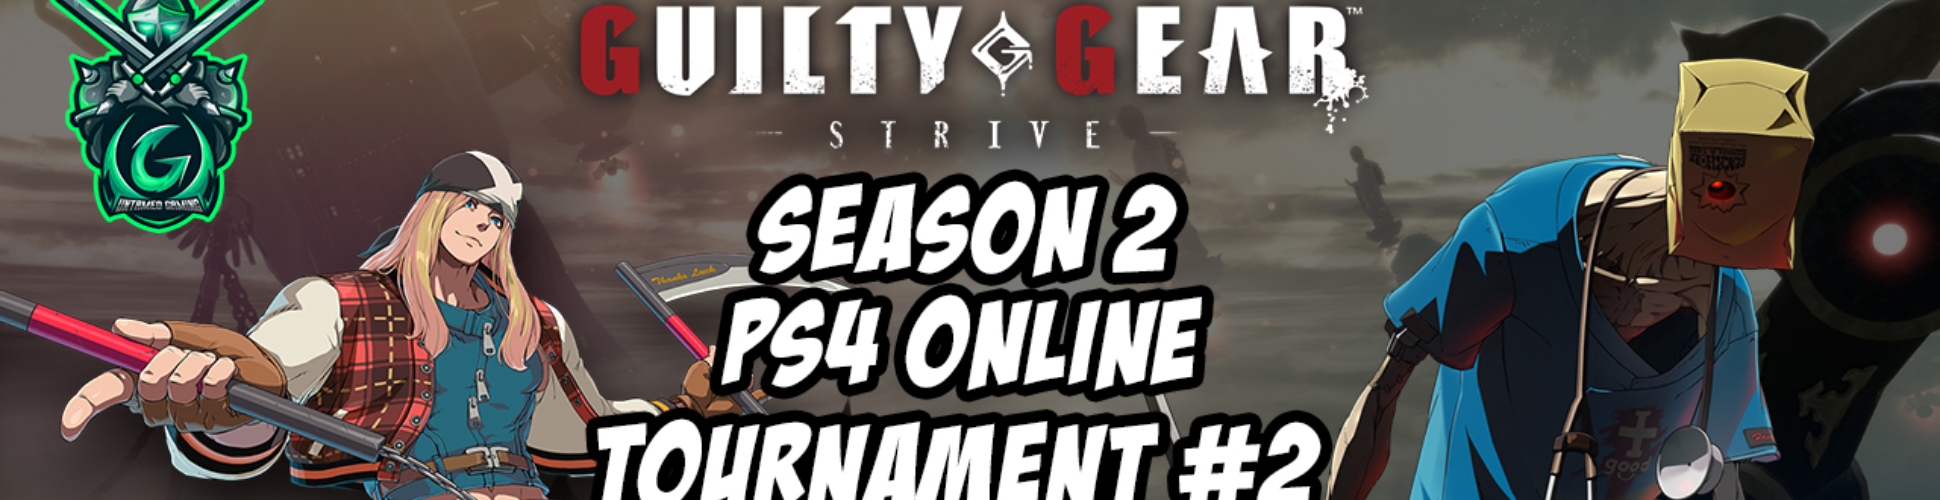 GG Strive Season 2 PS4 Online Tournament #2 10/1/22